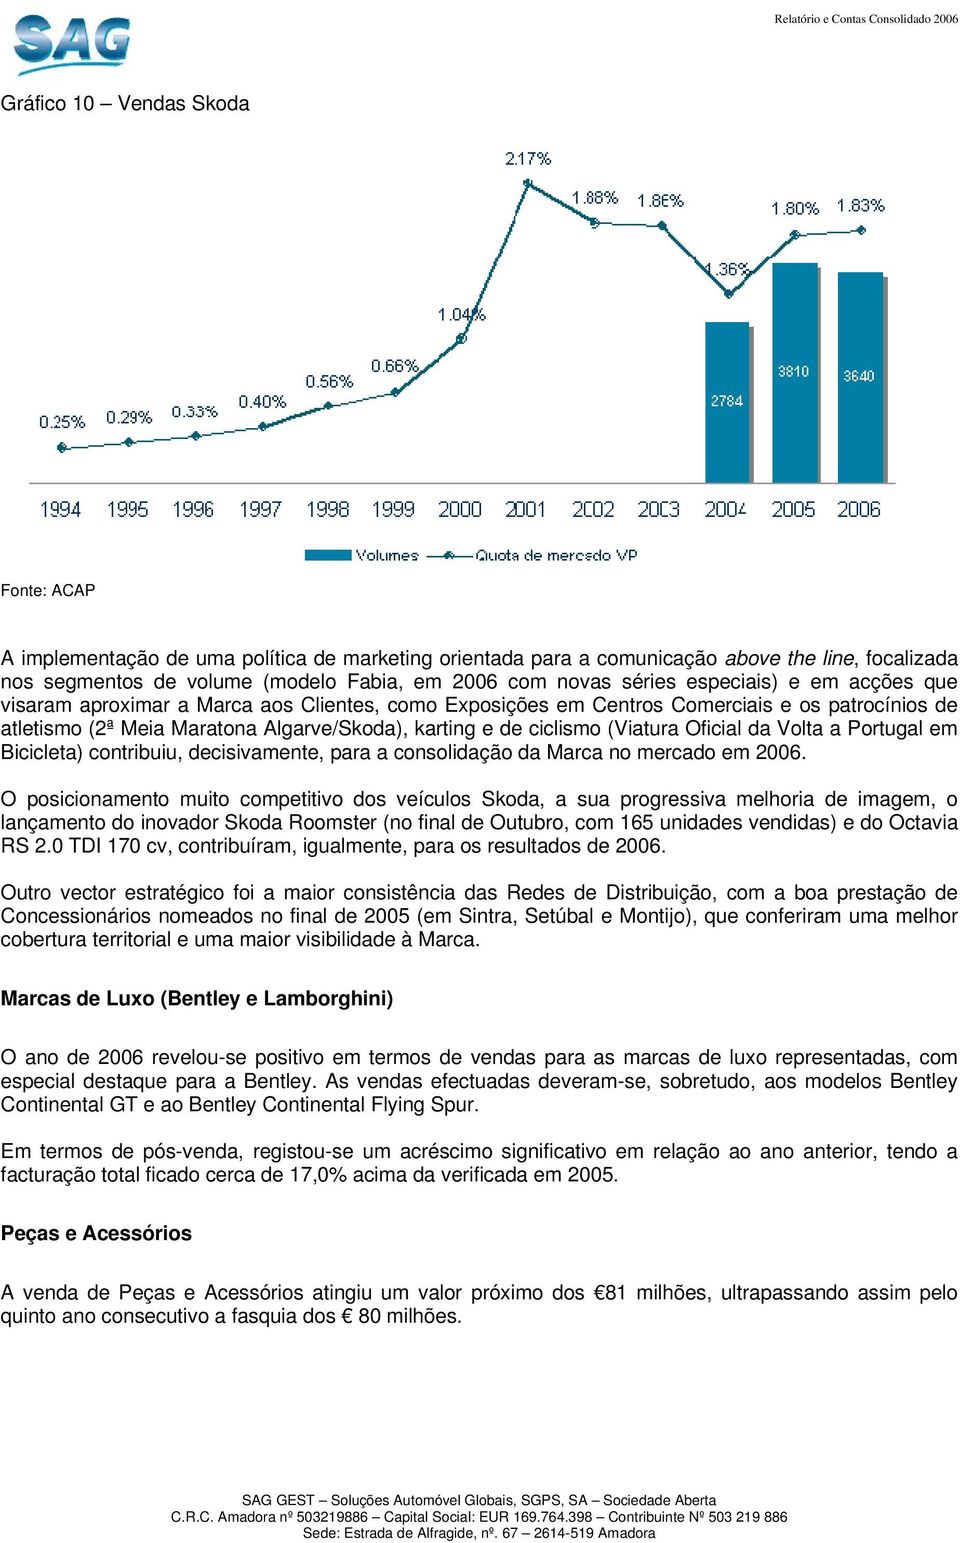 (Viatura Oficial da Volta a Portugal em Bicicleta) contribuiu, decisivamente, para a consolidação da Marca no mercado em 2006.